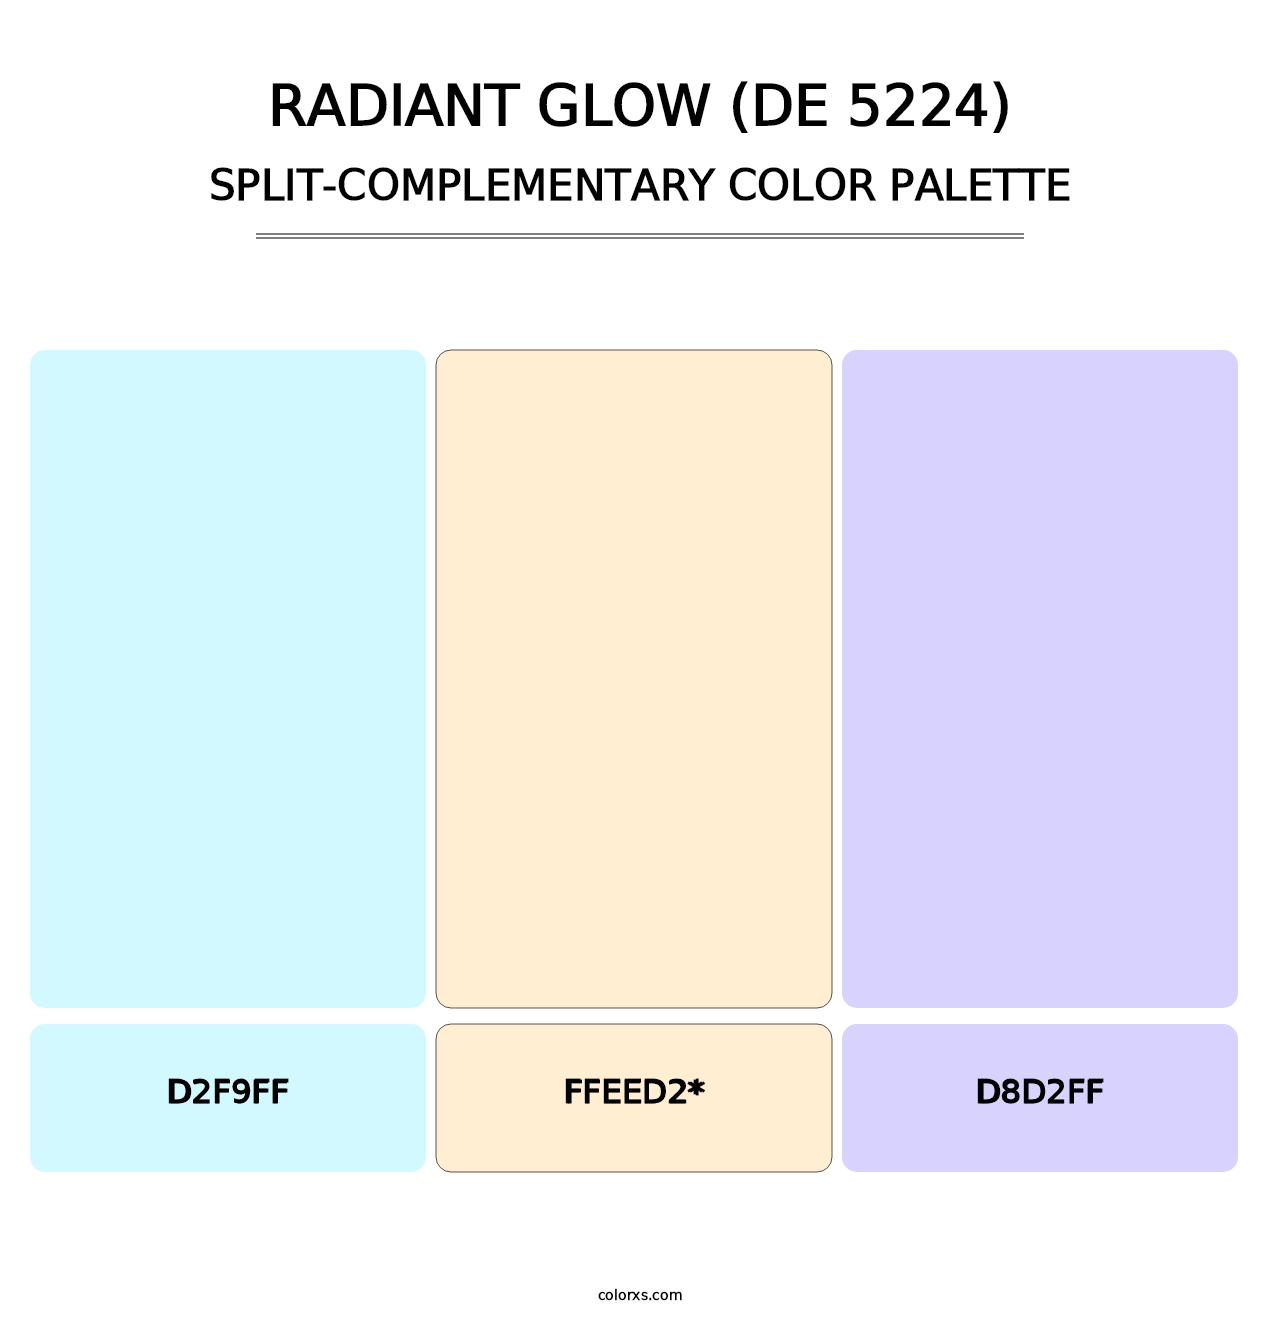 Radiant Glow (DE 5224) - Split-Complementary Color Palette